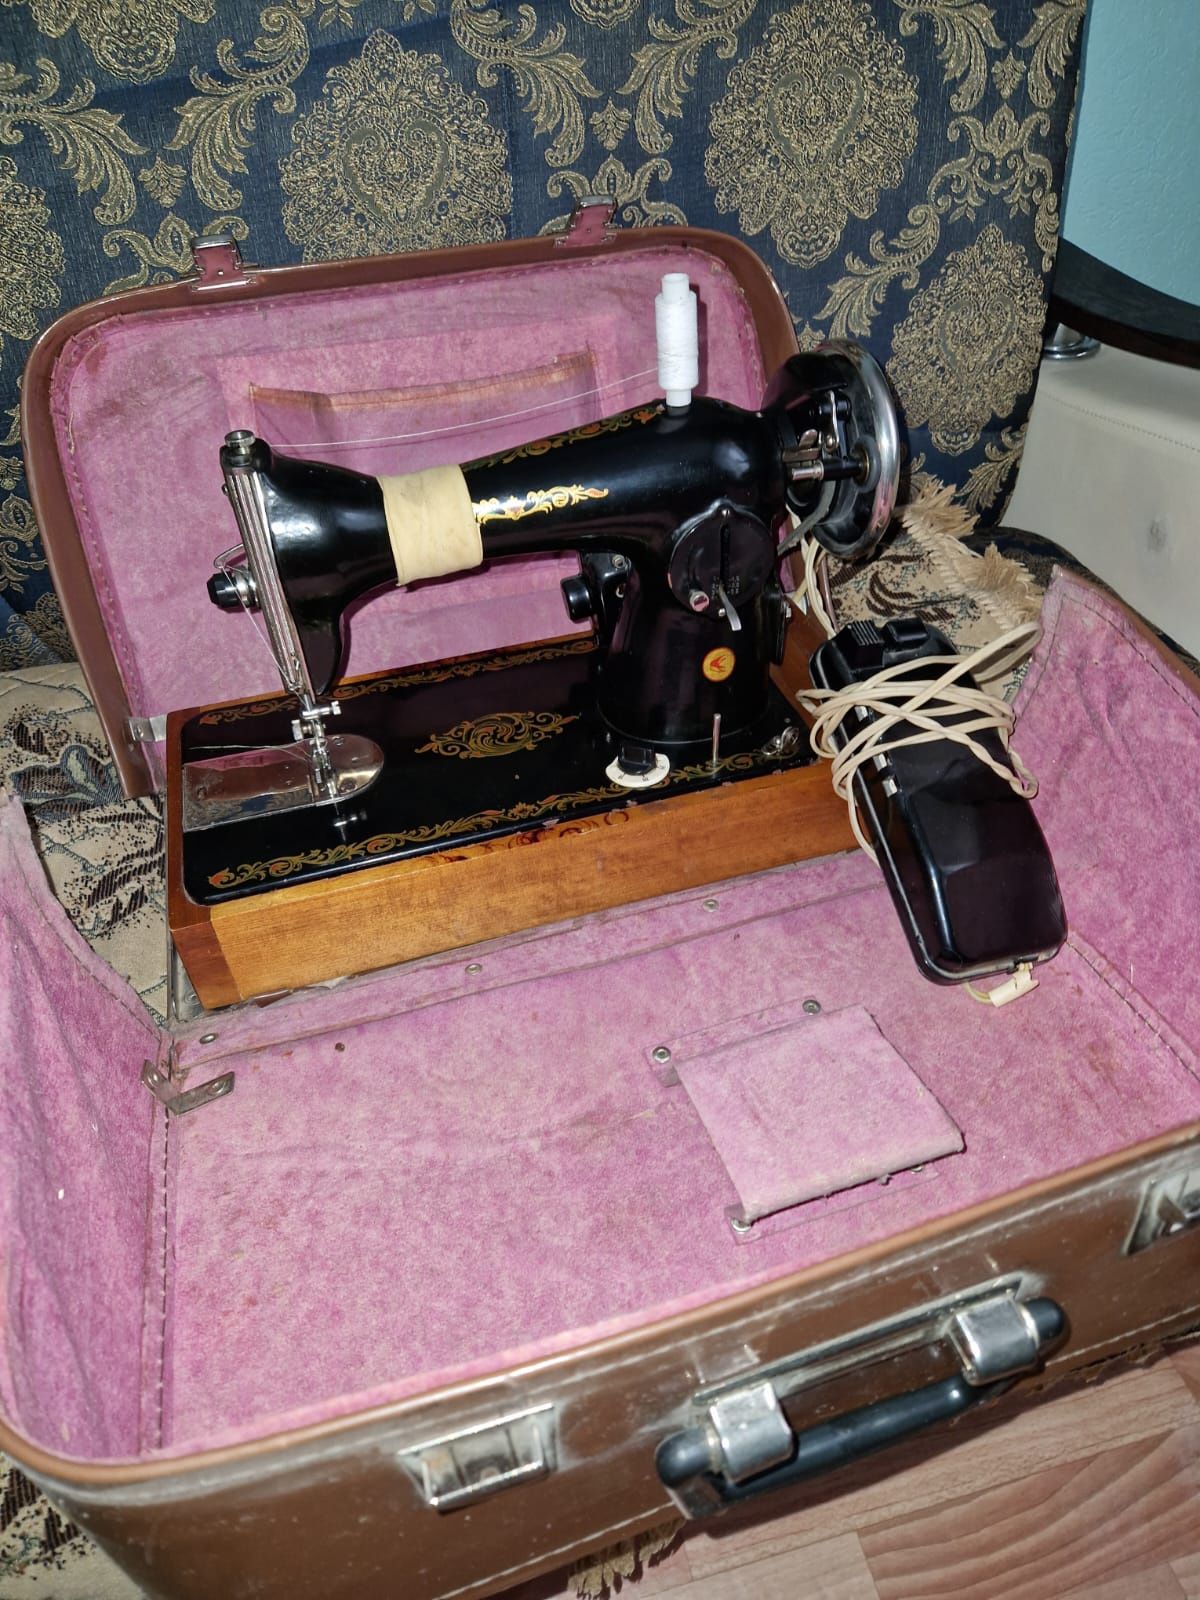 Машинка швейная Бытовая 2М-35 Класса С электроприводом, на подставке.